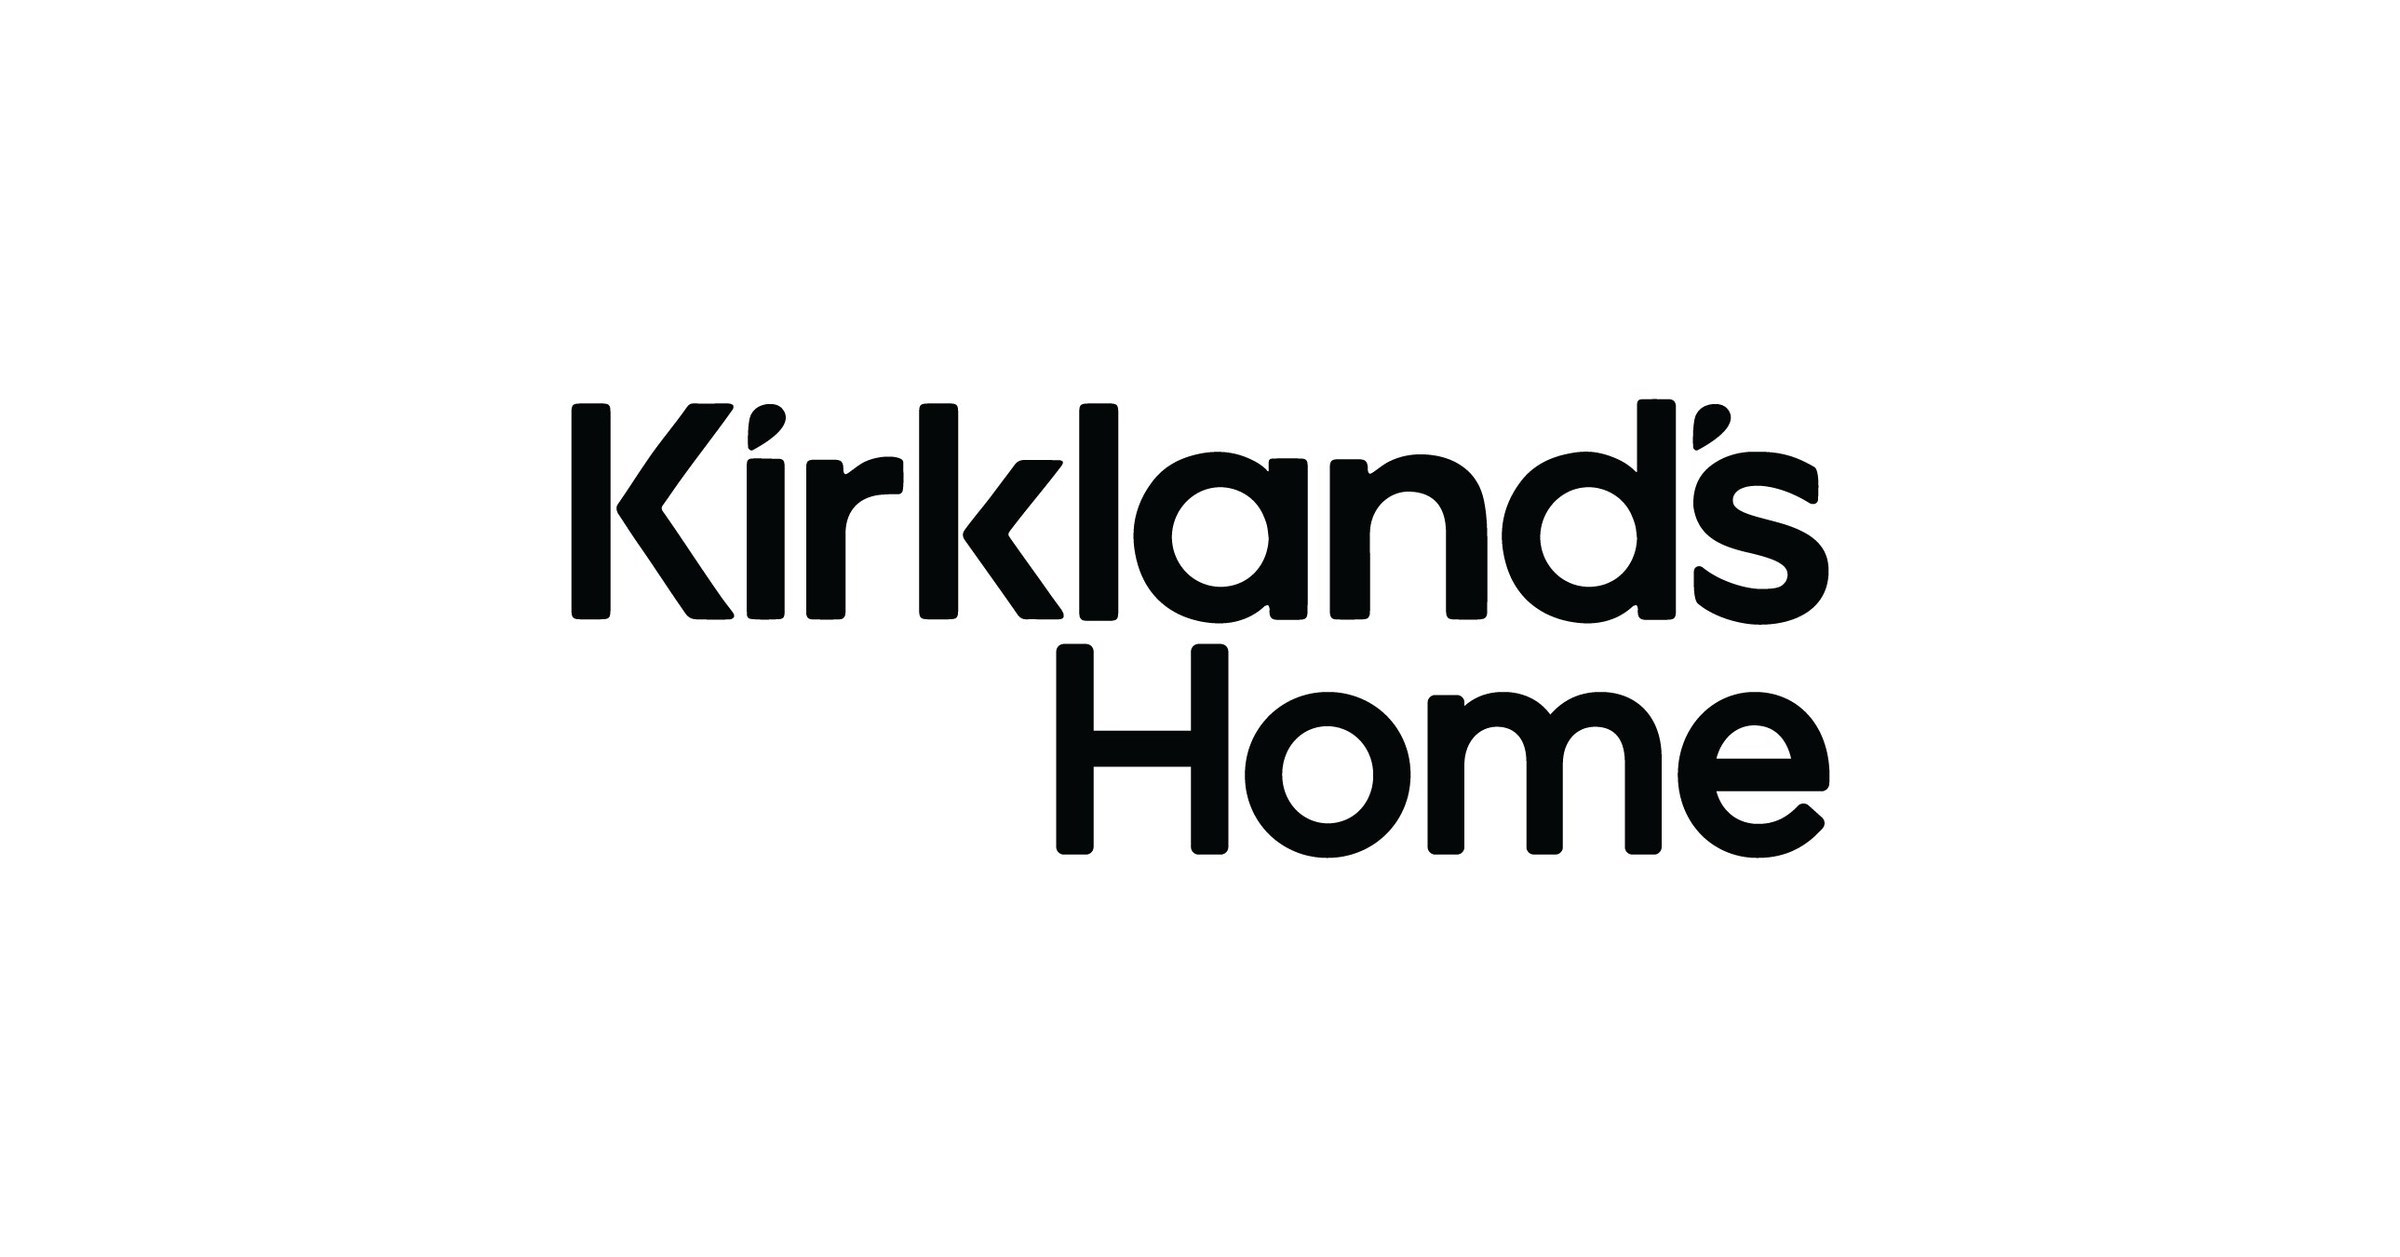 Newsweek Ranks Kirkland's Loyalty Program No. 1 Among U.S. Home Decor